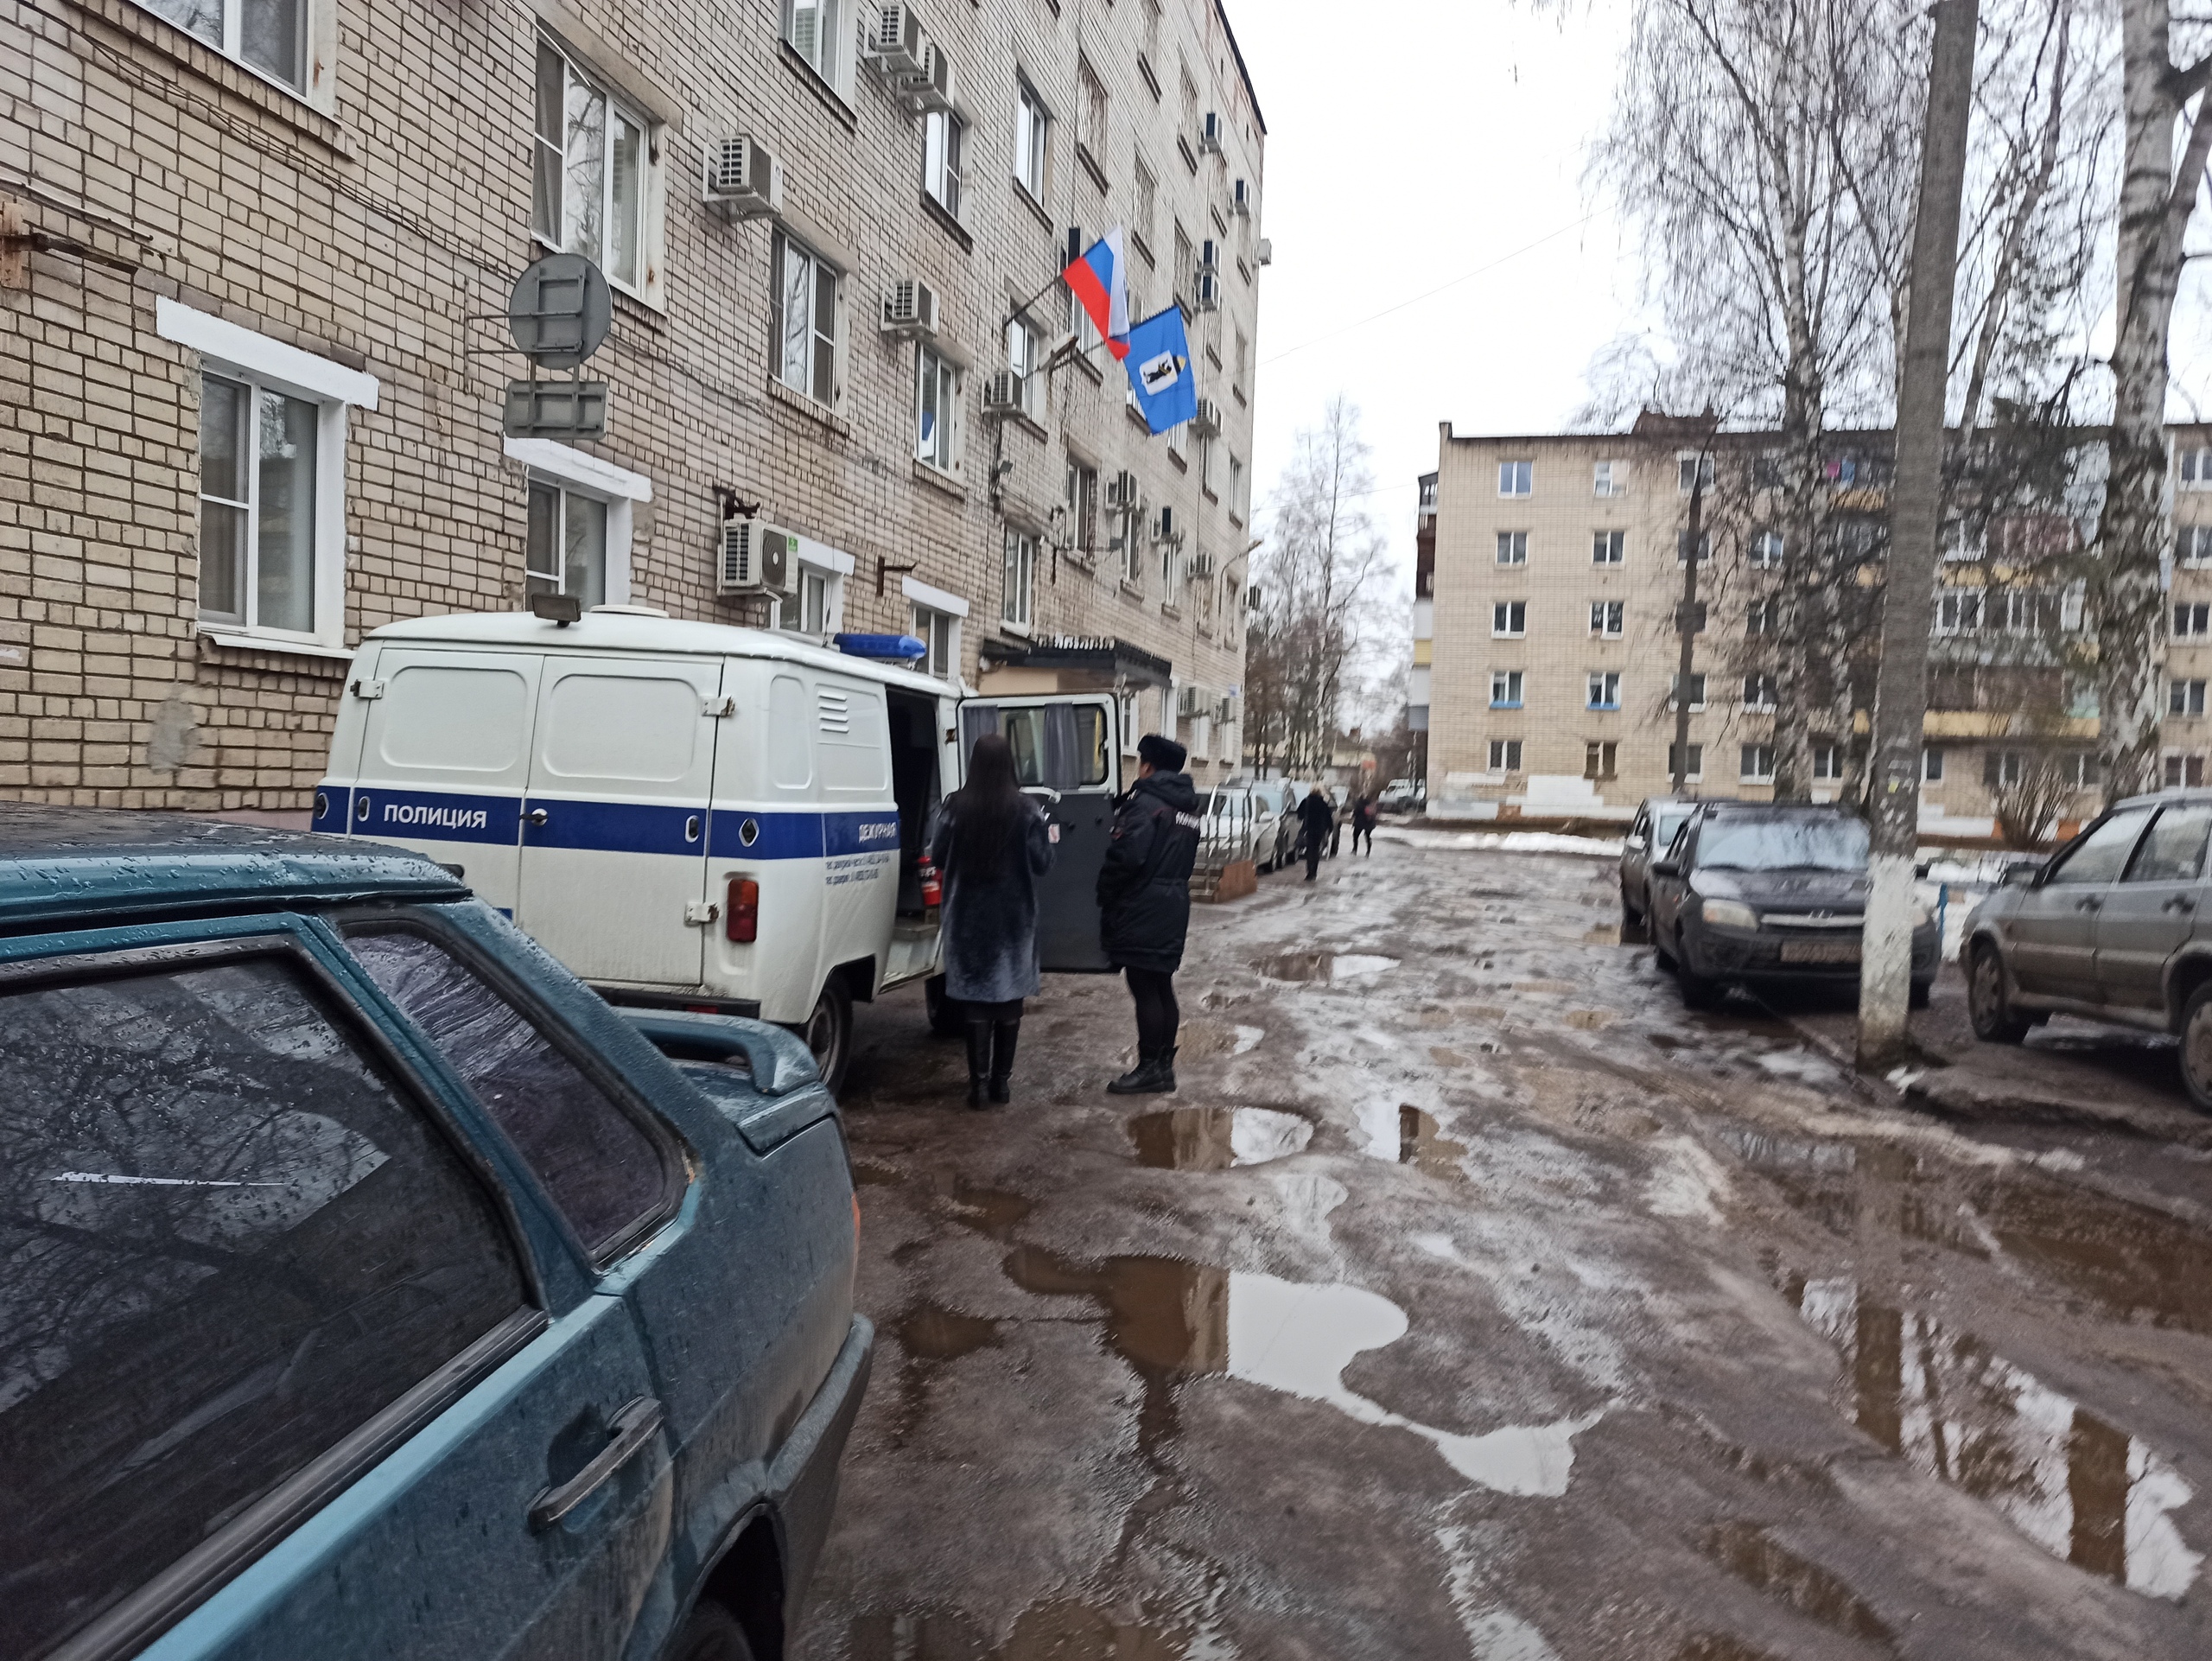  Житель Ярославля угрожал взорвать коммунальщиков гранатой